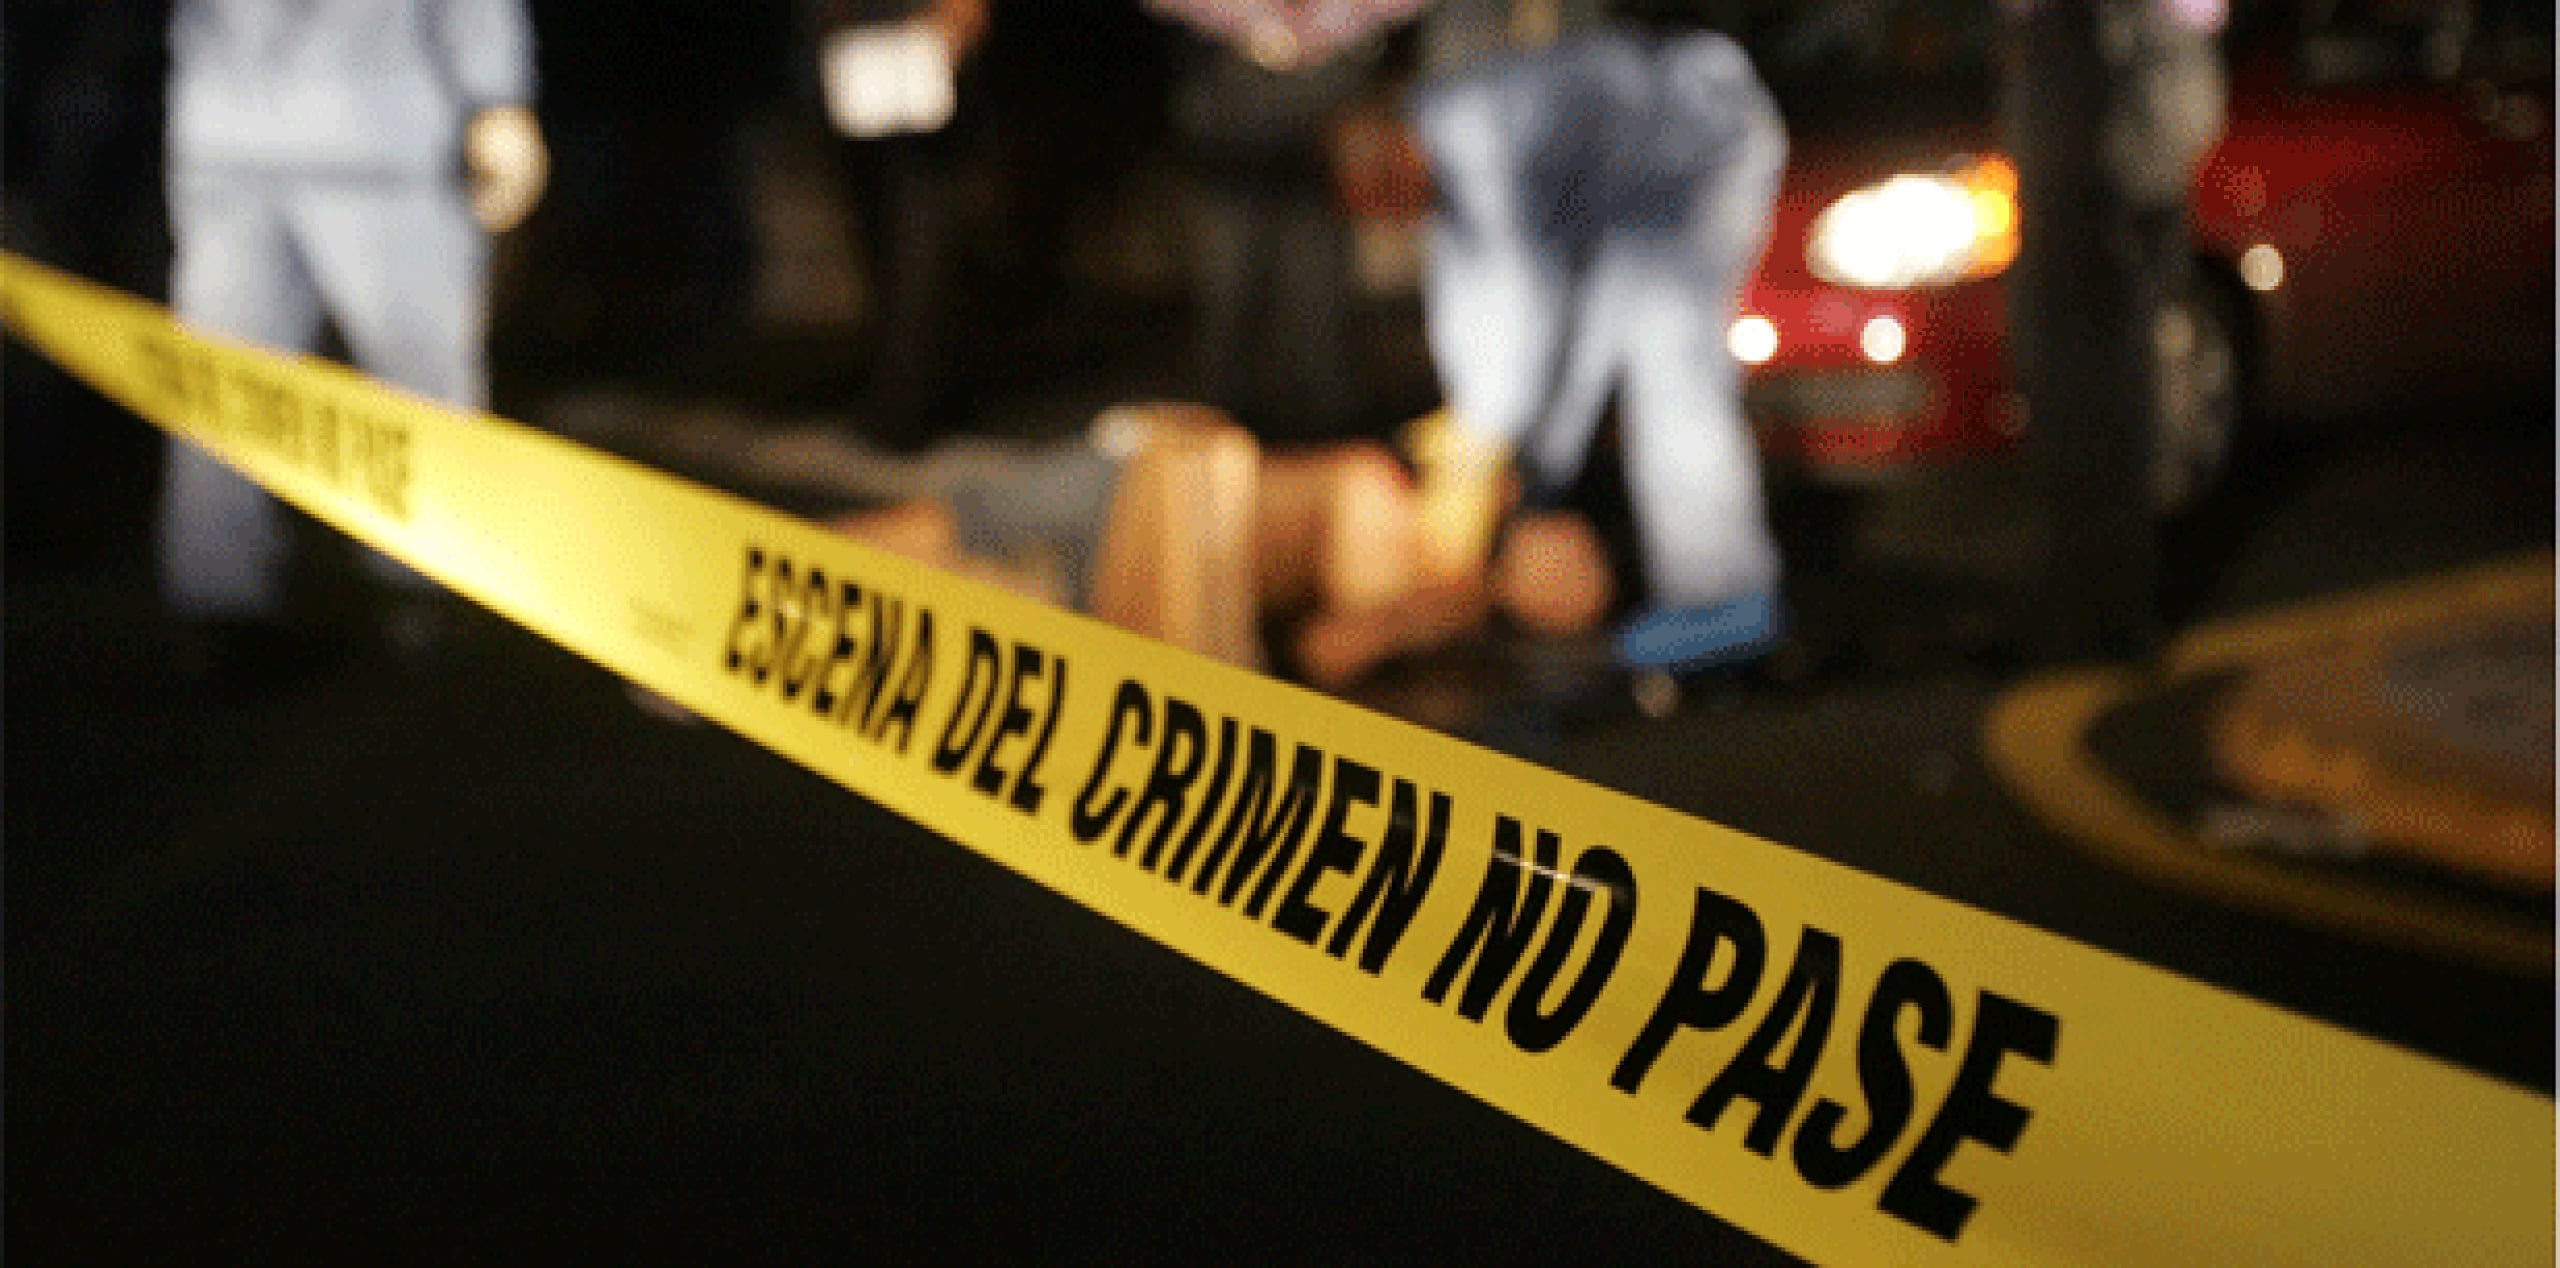 Durante el fin de semana se han reportado seis asesinatos en Río Piedras, Santurce y Bayamón, respectivamente. (Archivo)